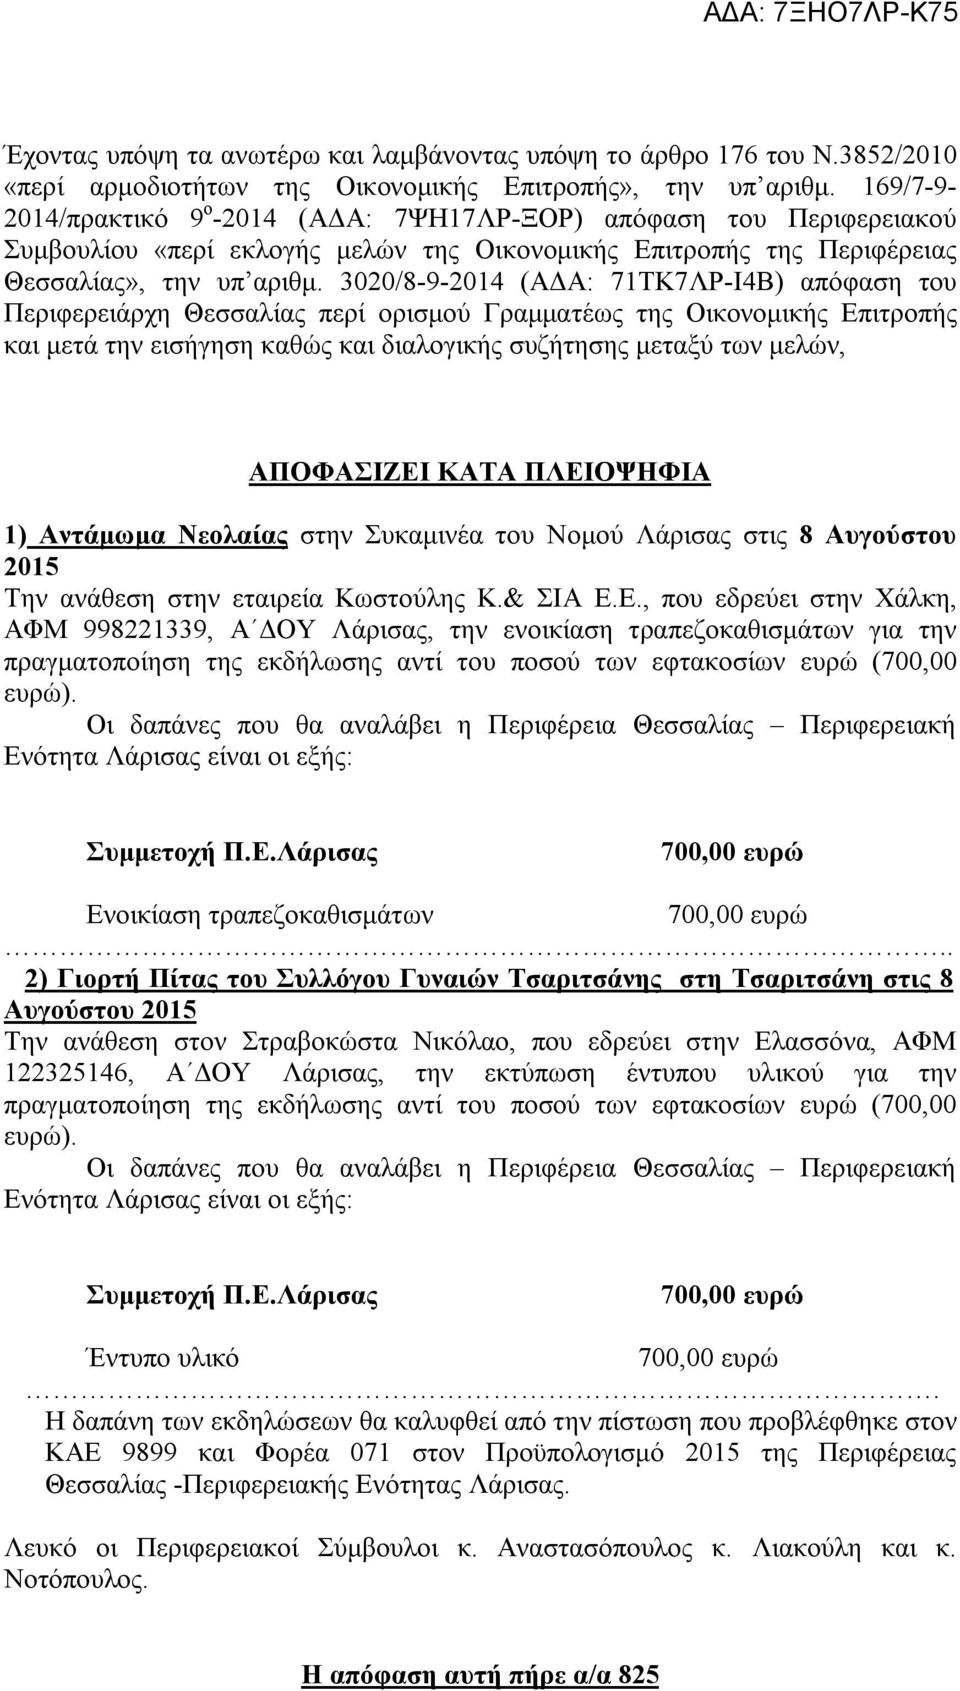 3020/8-9-2014 (ΑΔΑ: 71ΤΚ7ΛΡ-Ι4Β) απόφαση του Περιφερειάρχη Θεσσαλίας περί ορισμού Γραμματέως της Οικονομικής Επιτροπής και μετά την εισήγηση καθώς και διαλογικής συζήτησης μεταξύ των μελών,